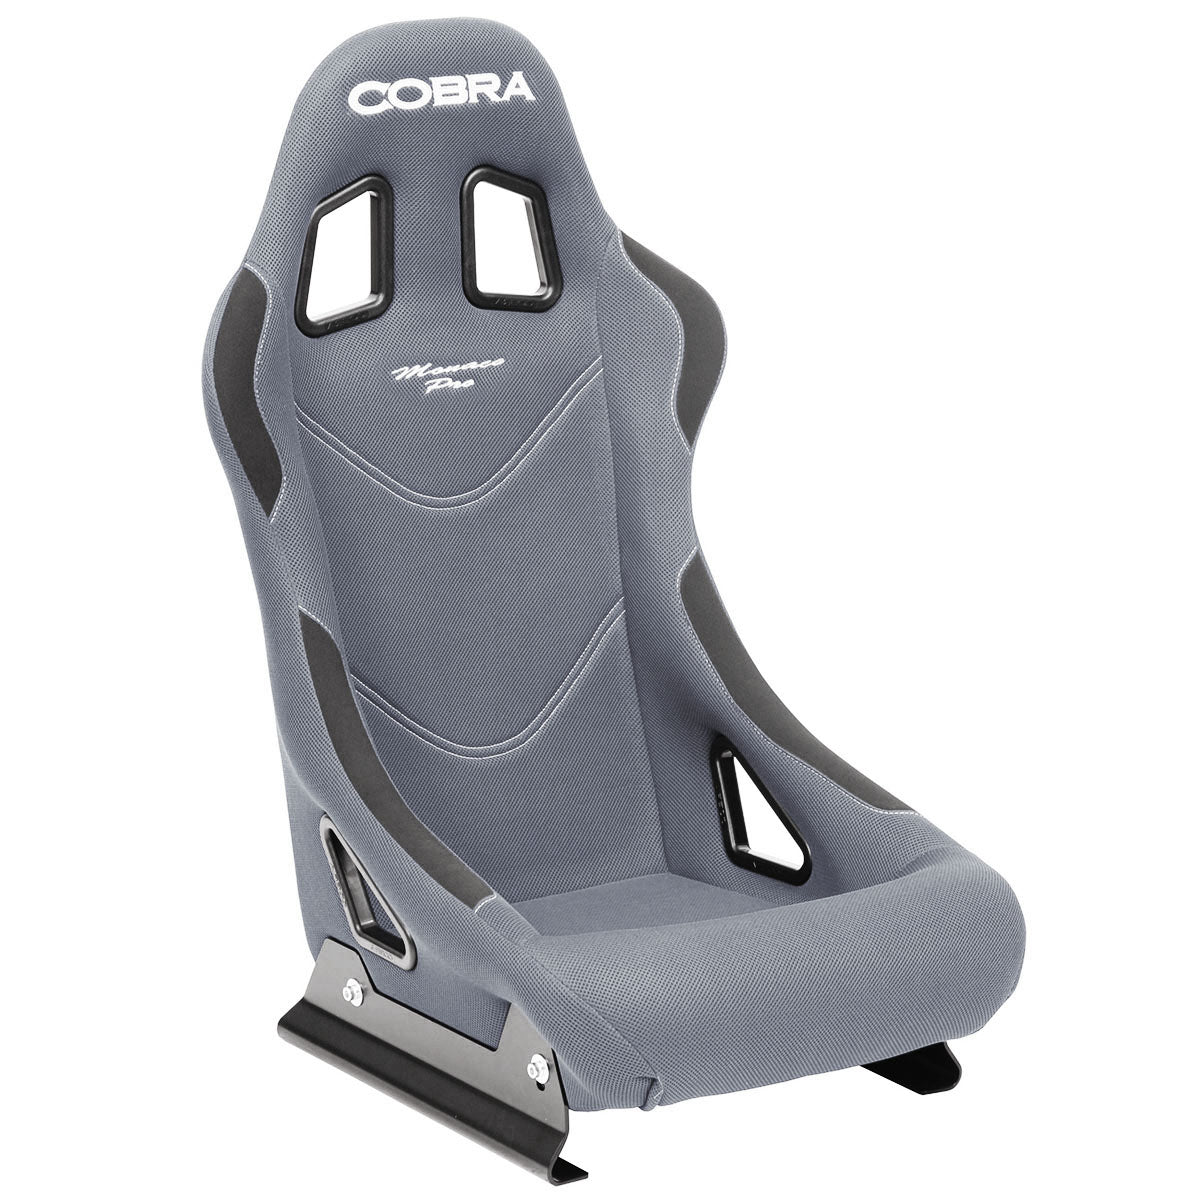 Cobra Monaco Pro Racing Seat